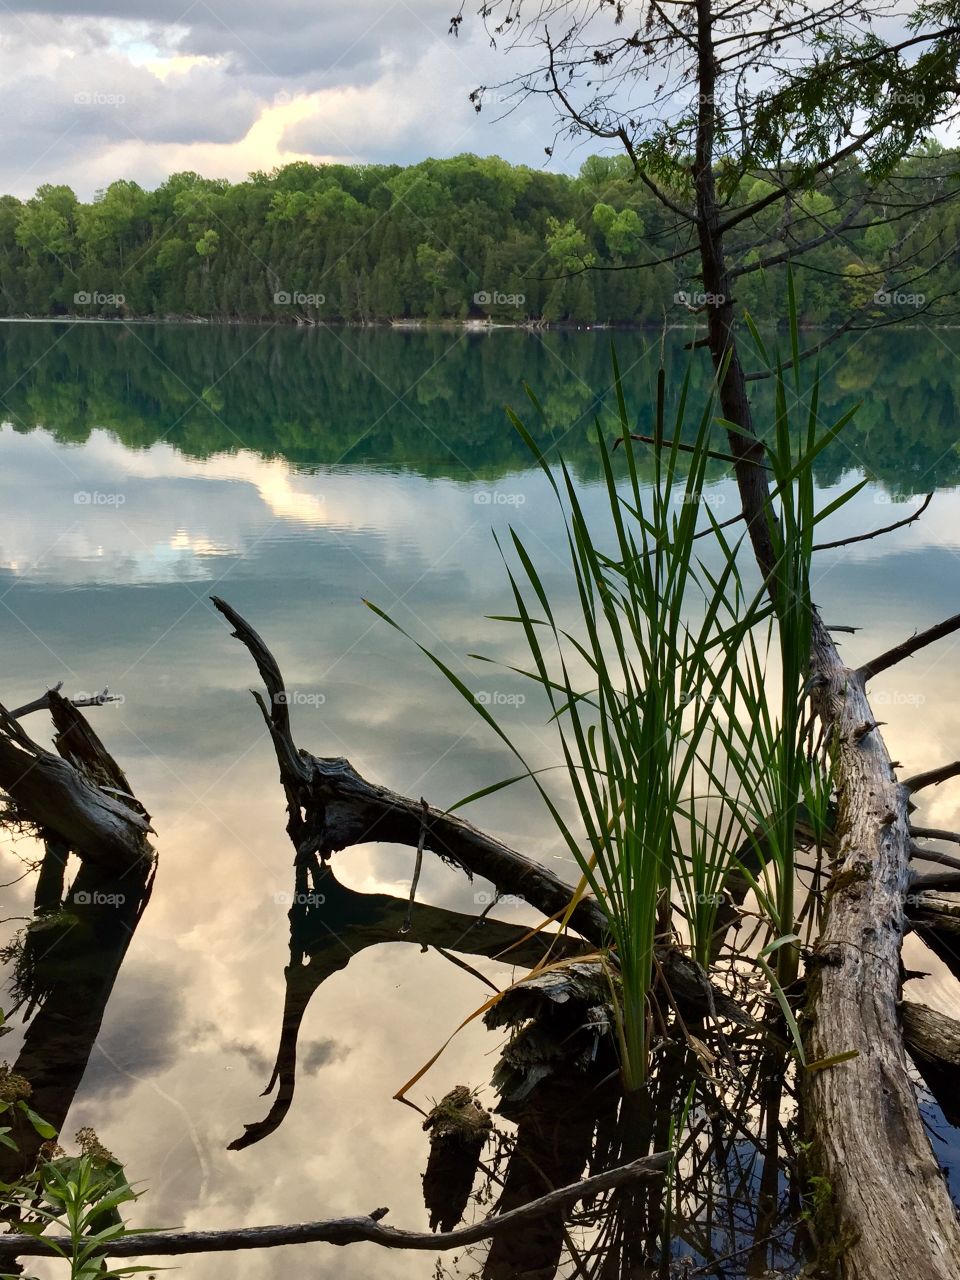 Reflections at Green Lakes